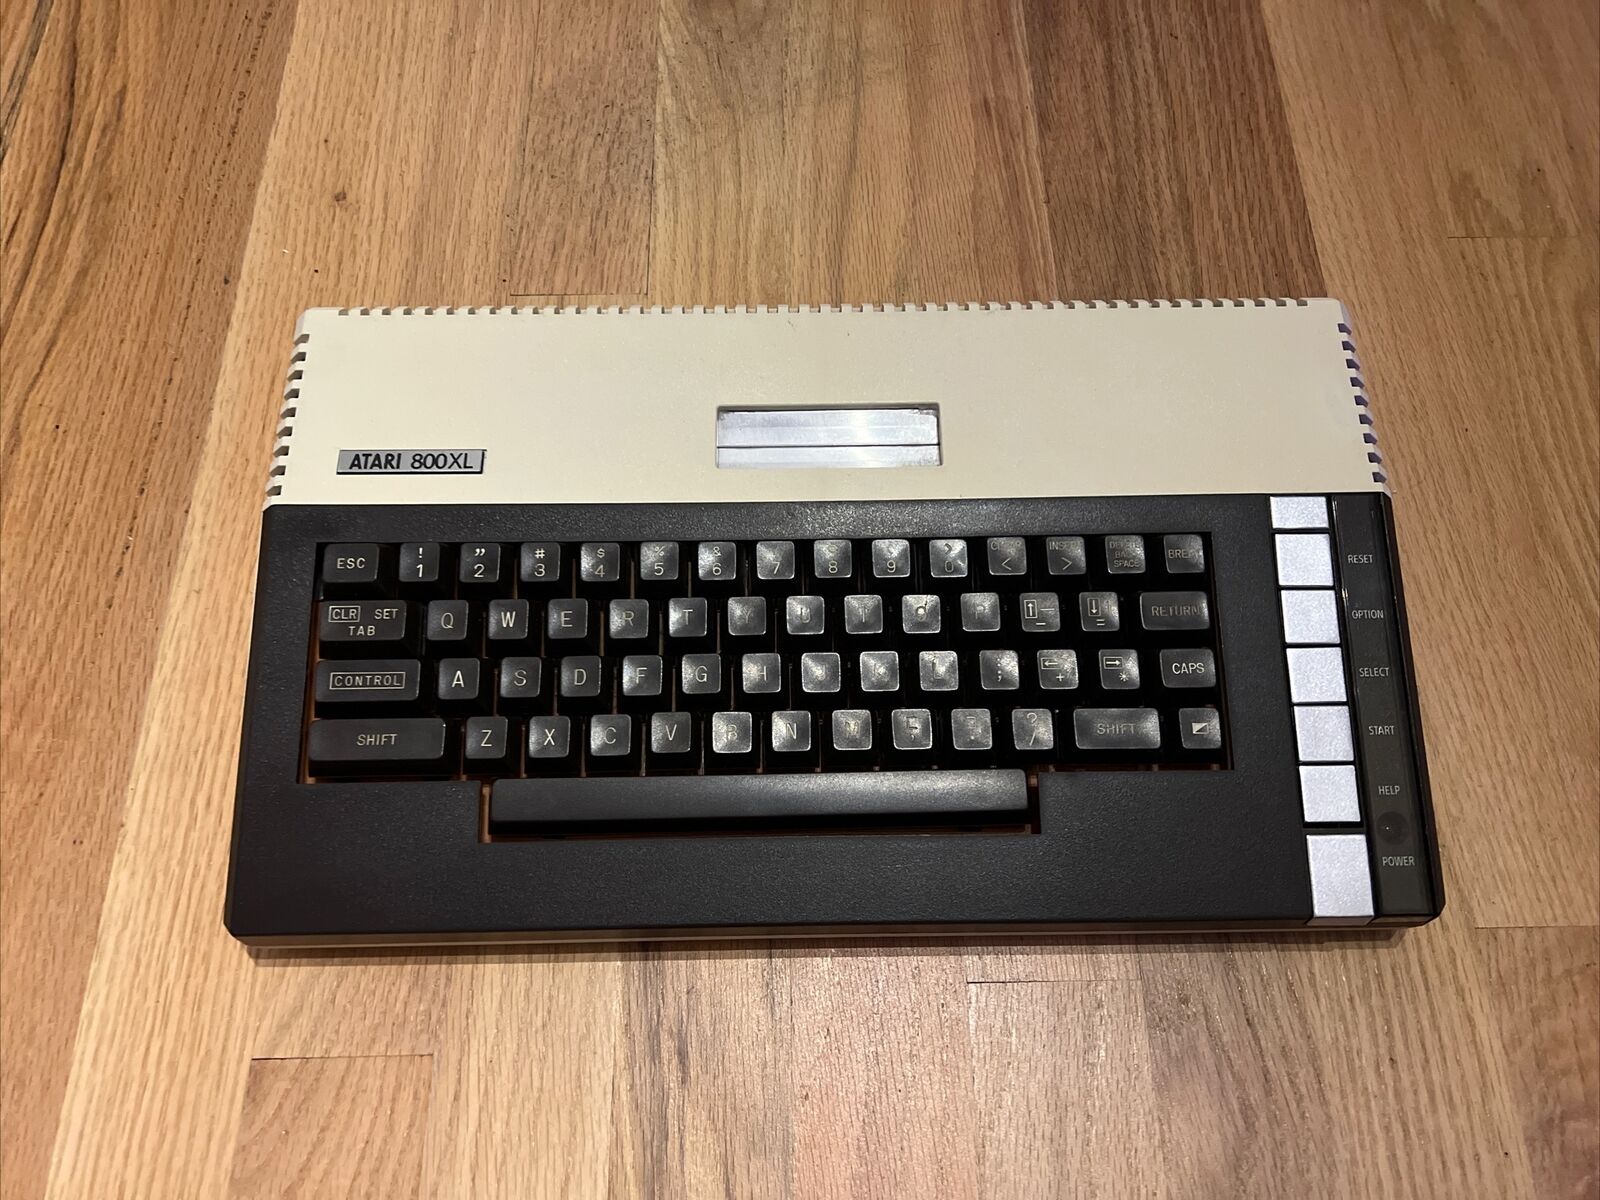 Atari 800xl nice condition